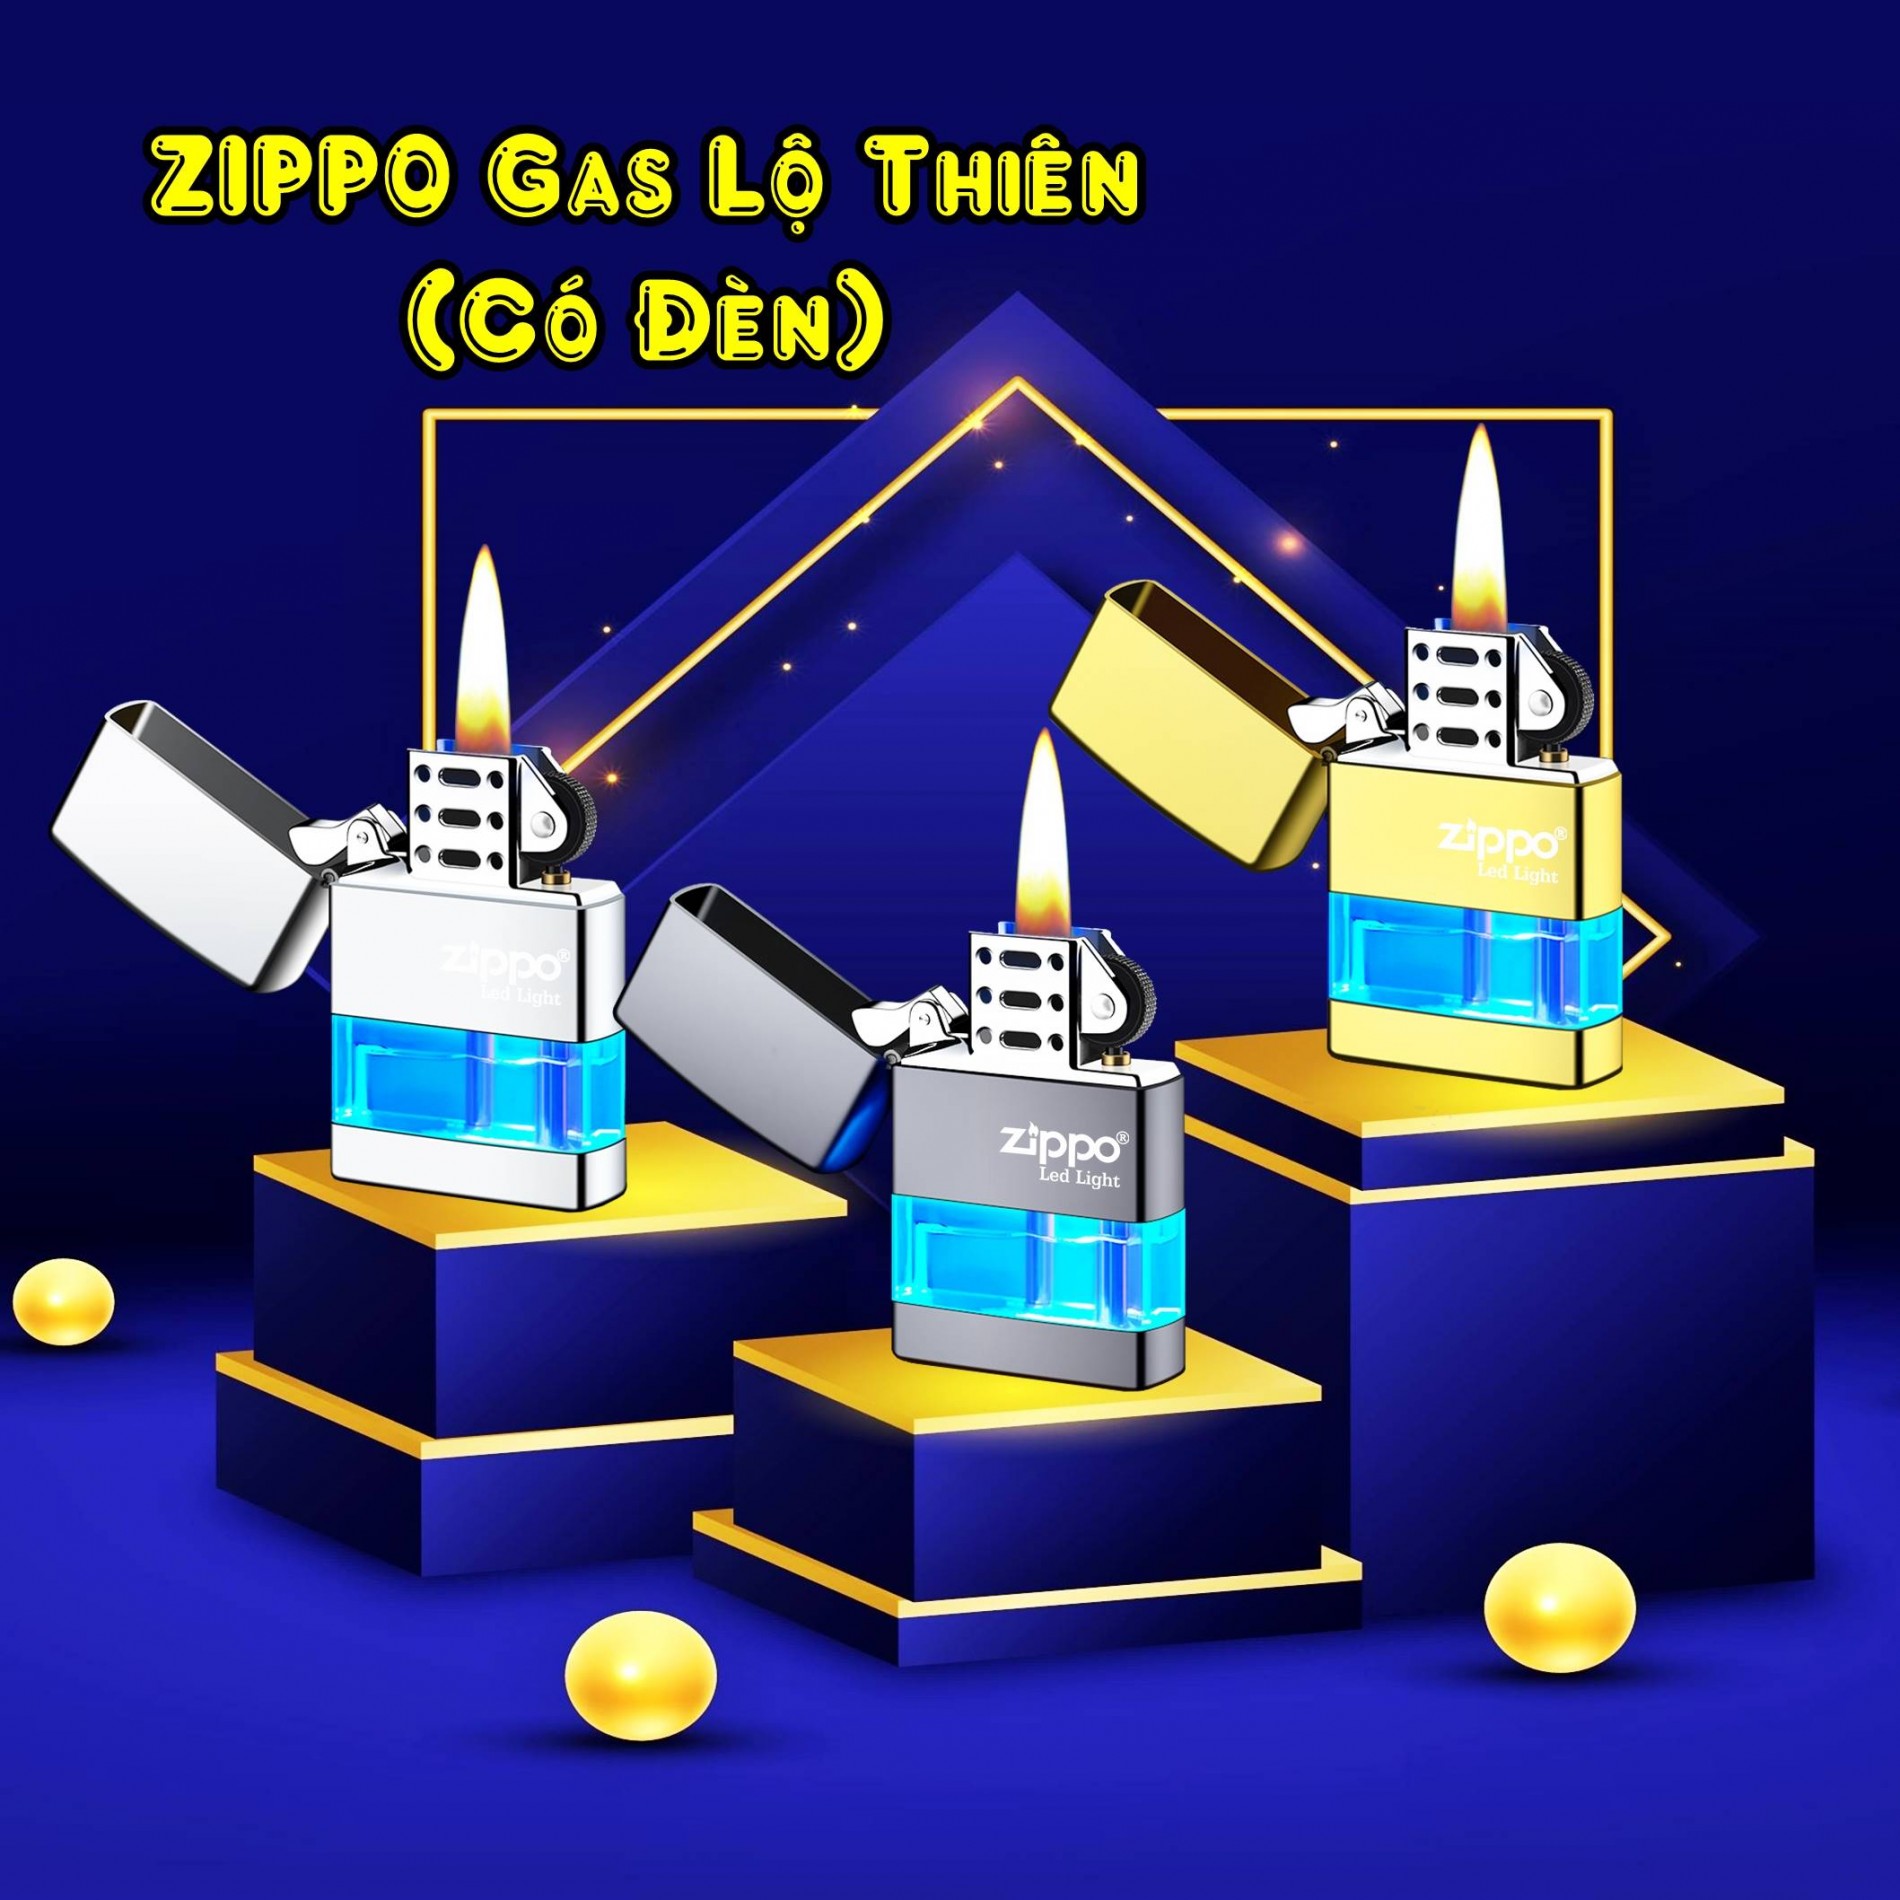 zippo_gas_lo_thien_co_den